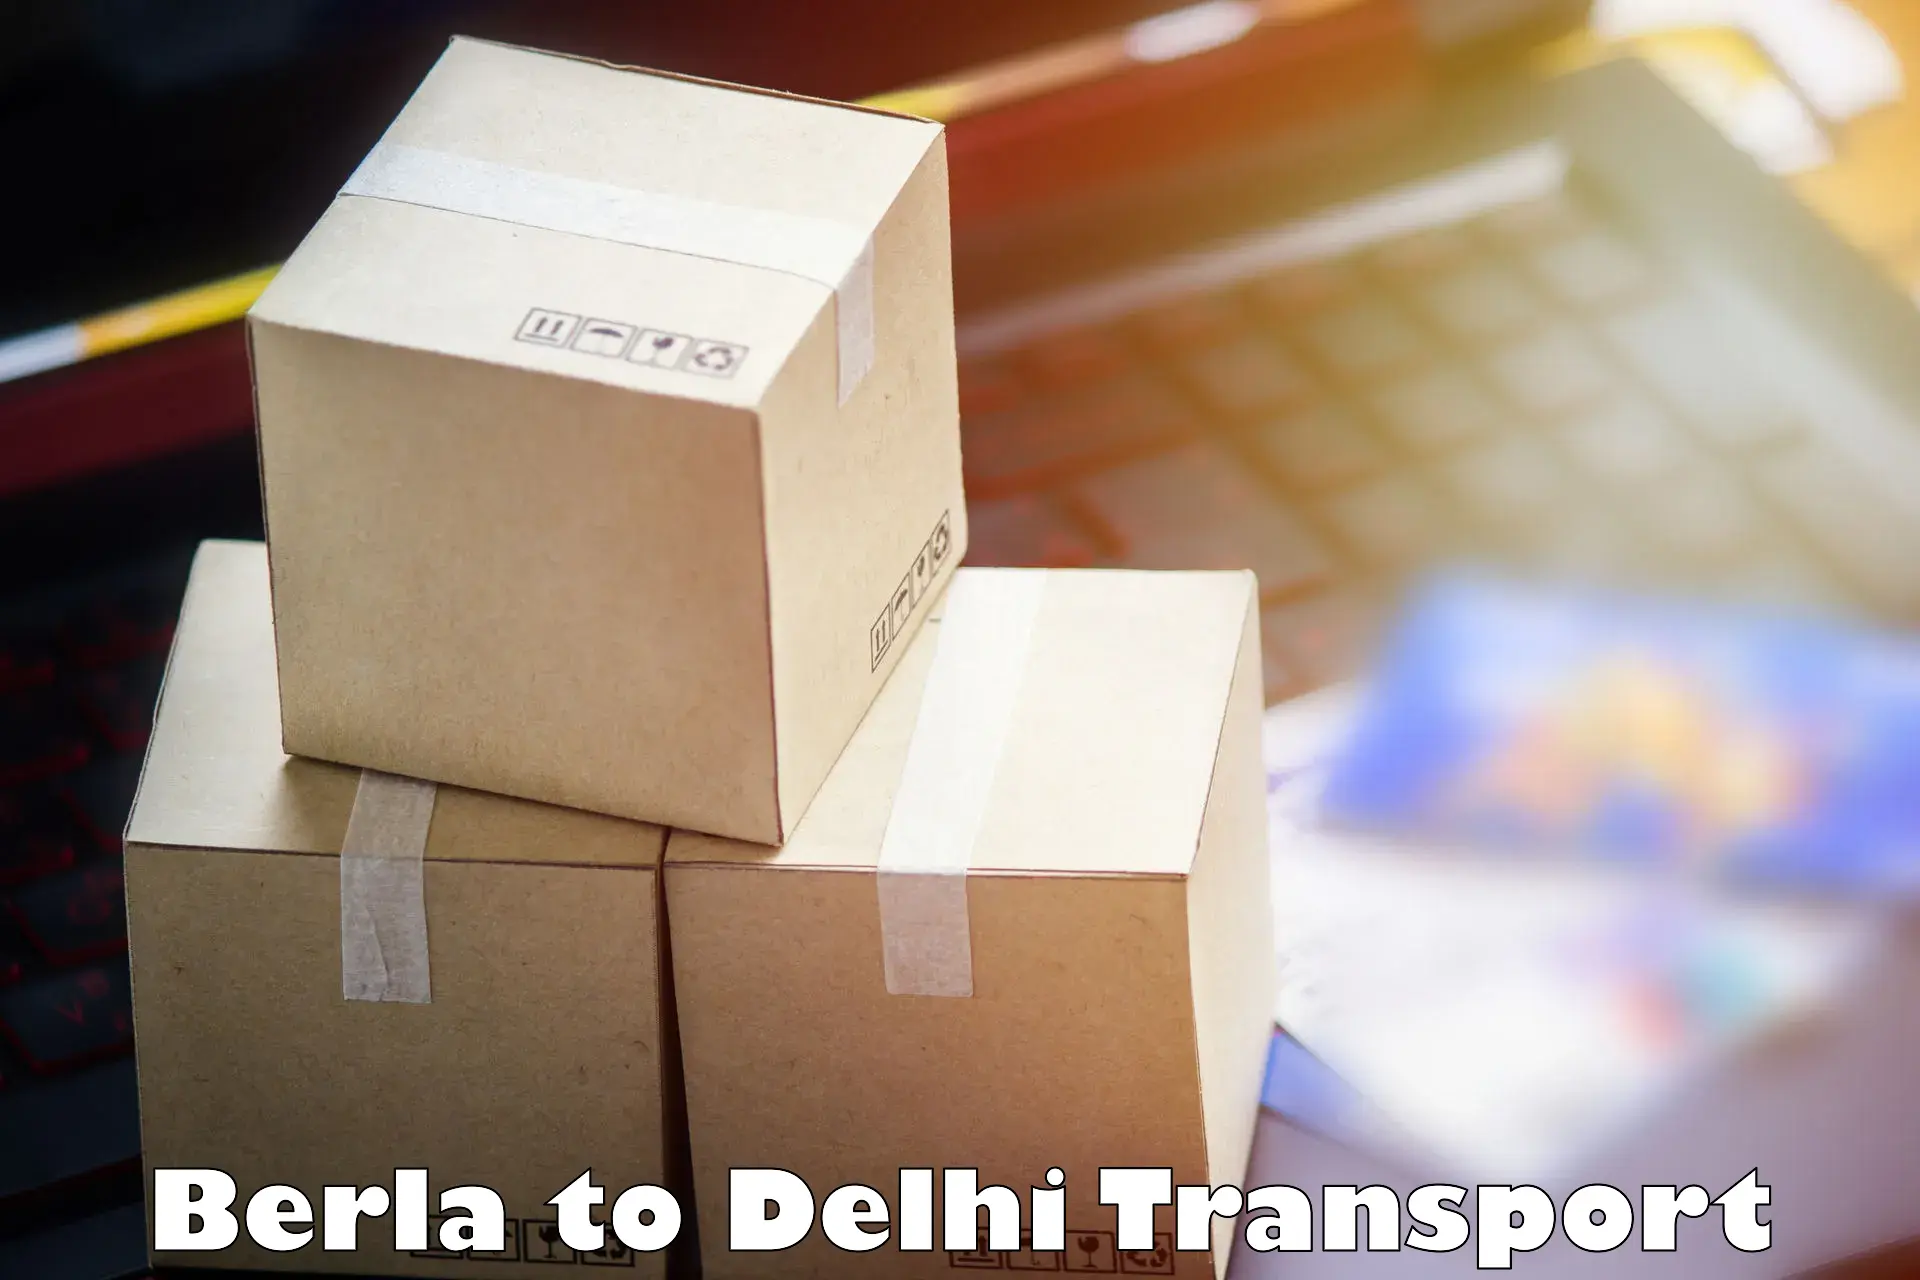 Intercity transport Berla to Ashok Vihar